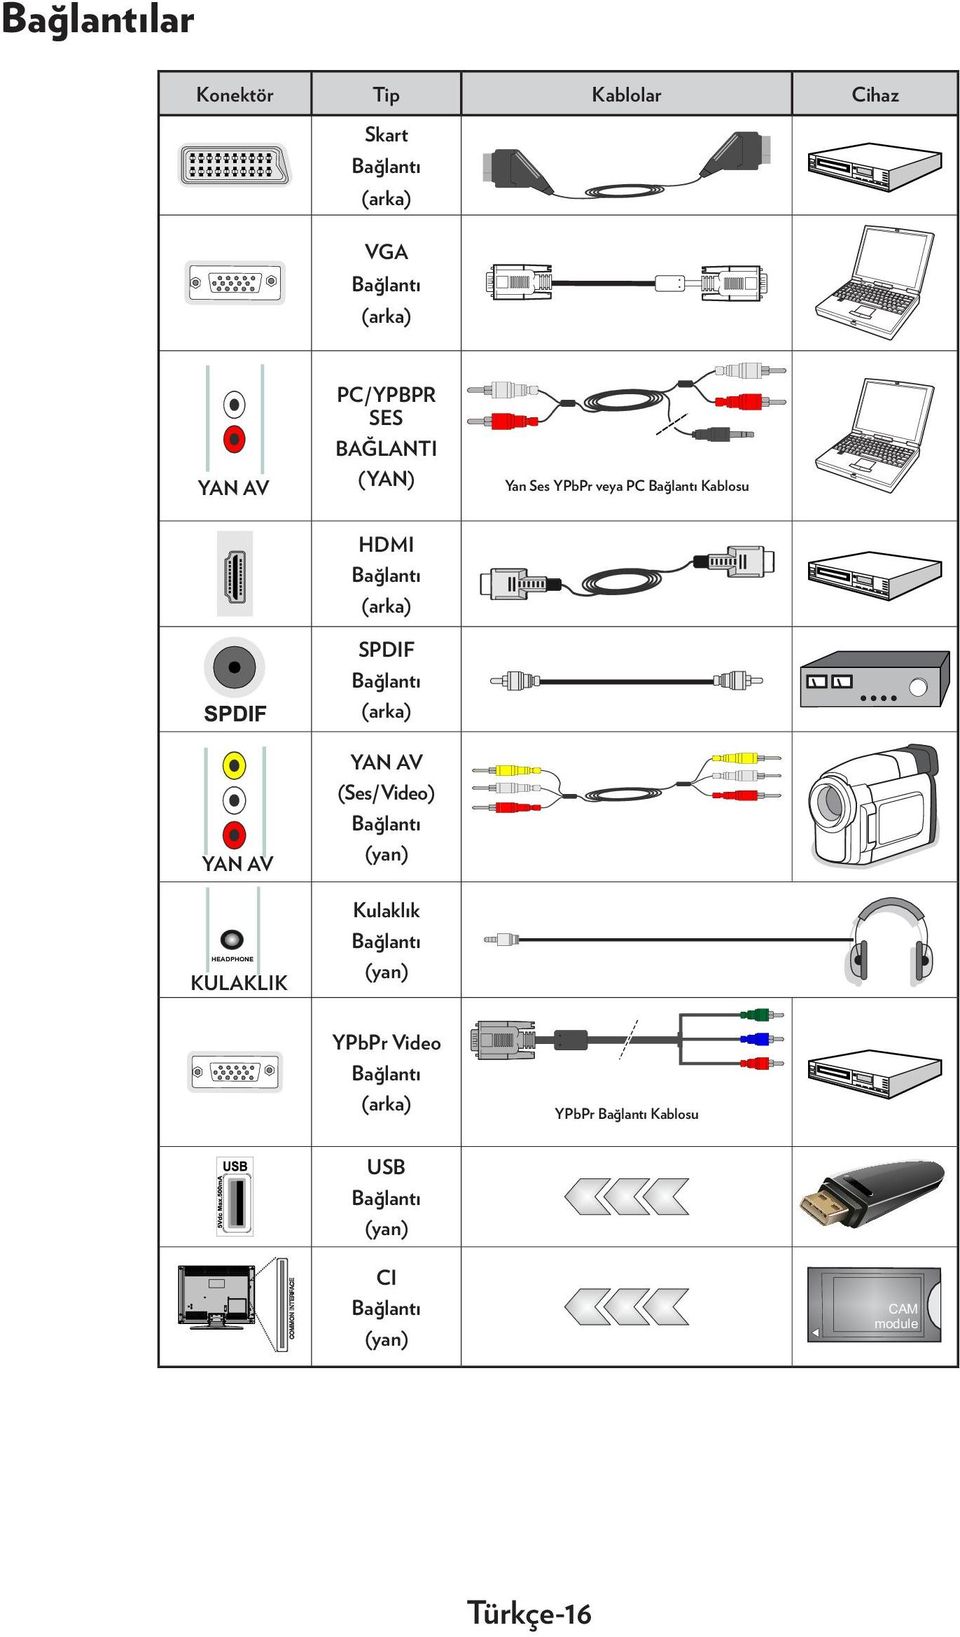 SPDIF Bağlantı (arka) YAN AV (Ses/Video) Bağlantı (yan) HEADPHONE KULAKLIK Kulaklık Bağlantı